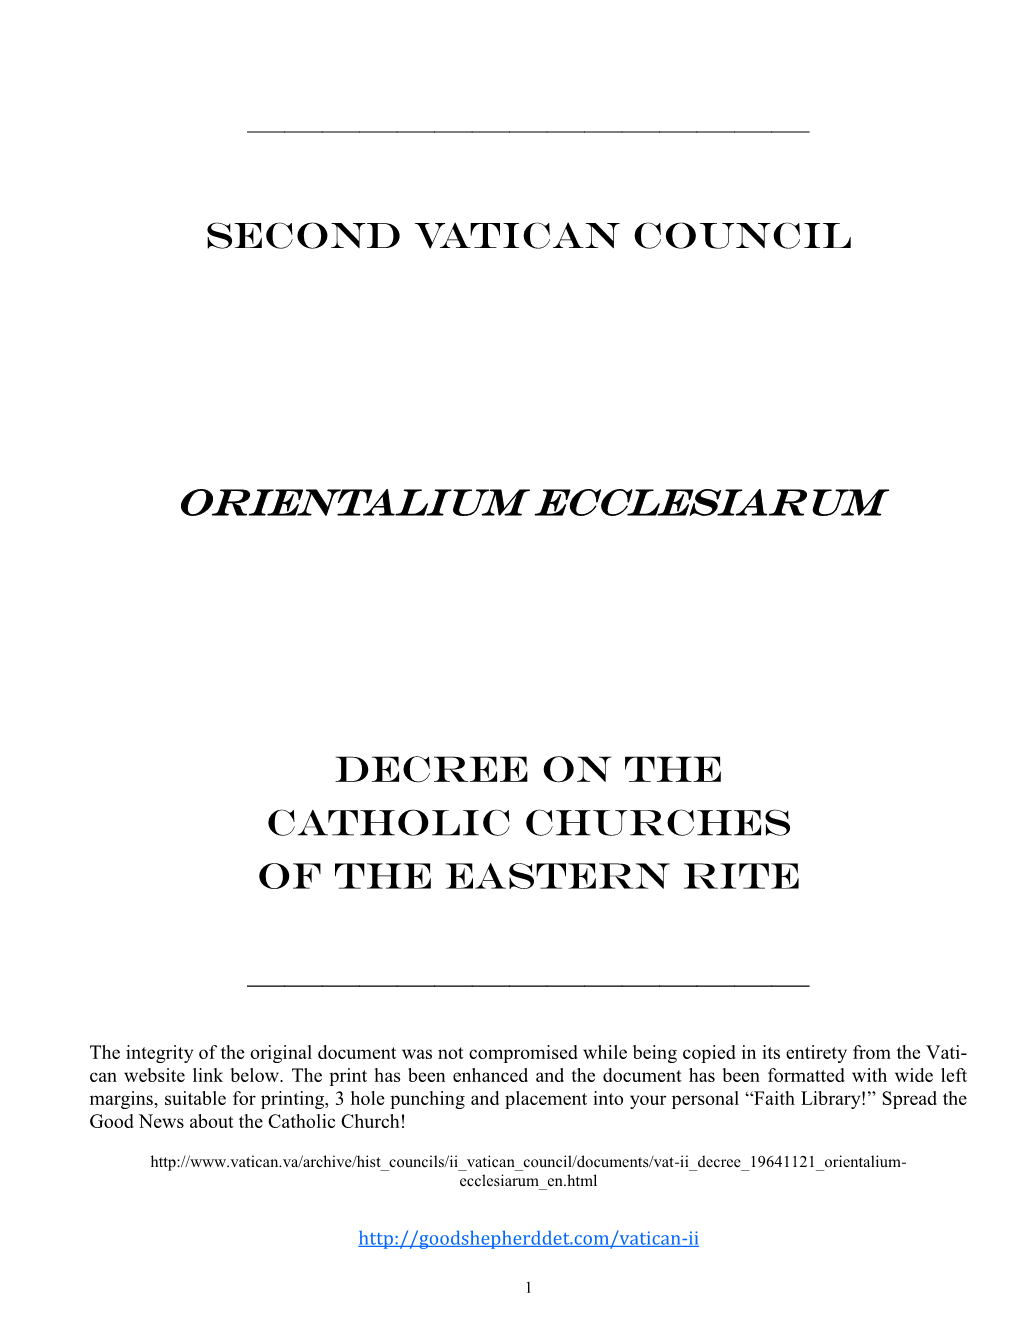 Orientalium Ecclesiarum- Vatican Ii Decree